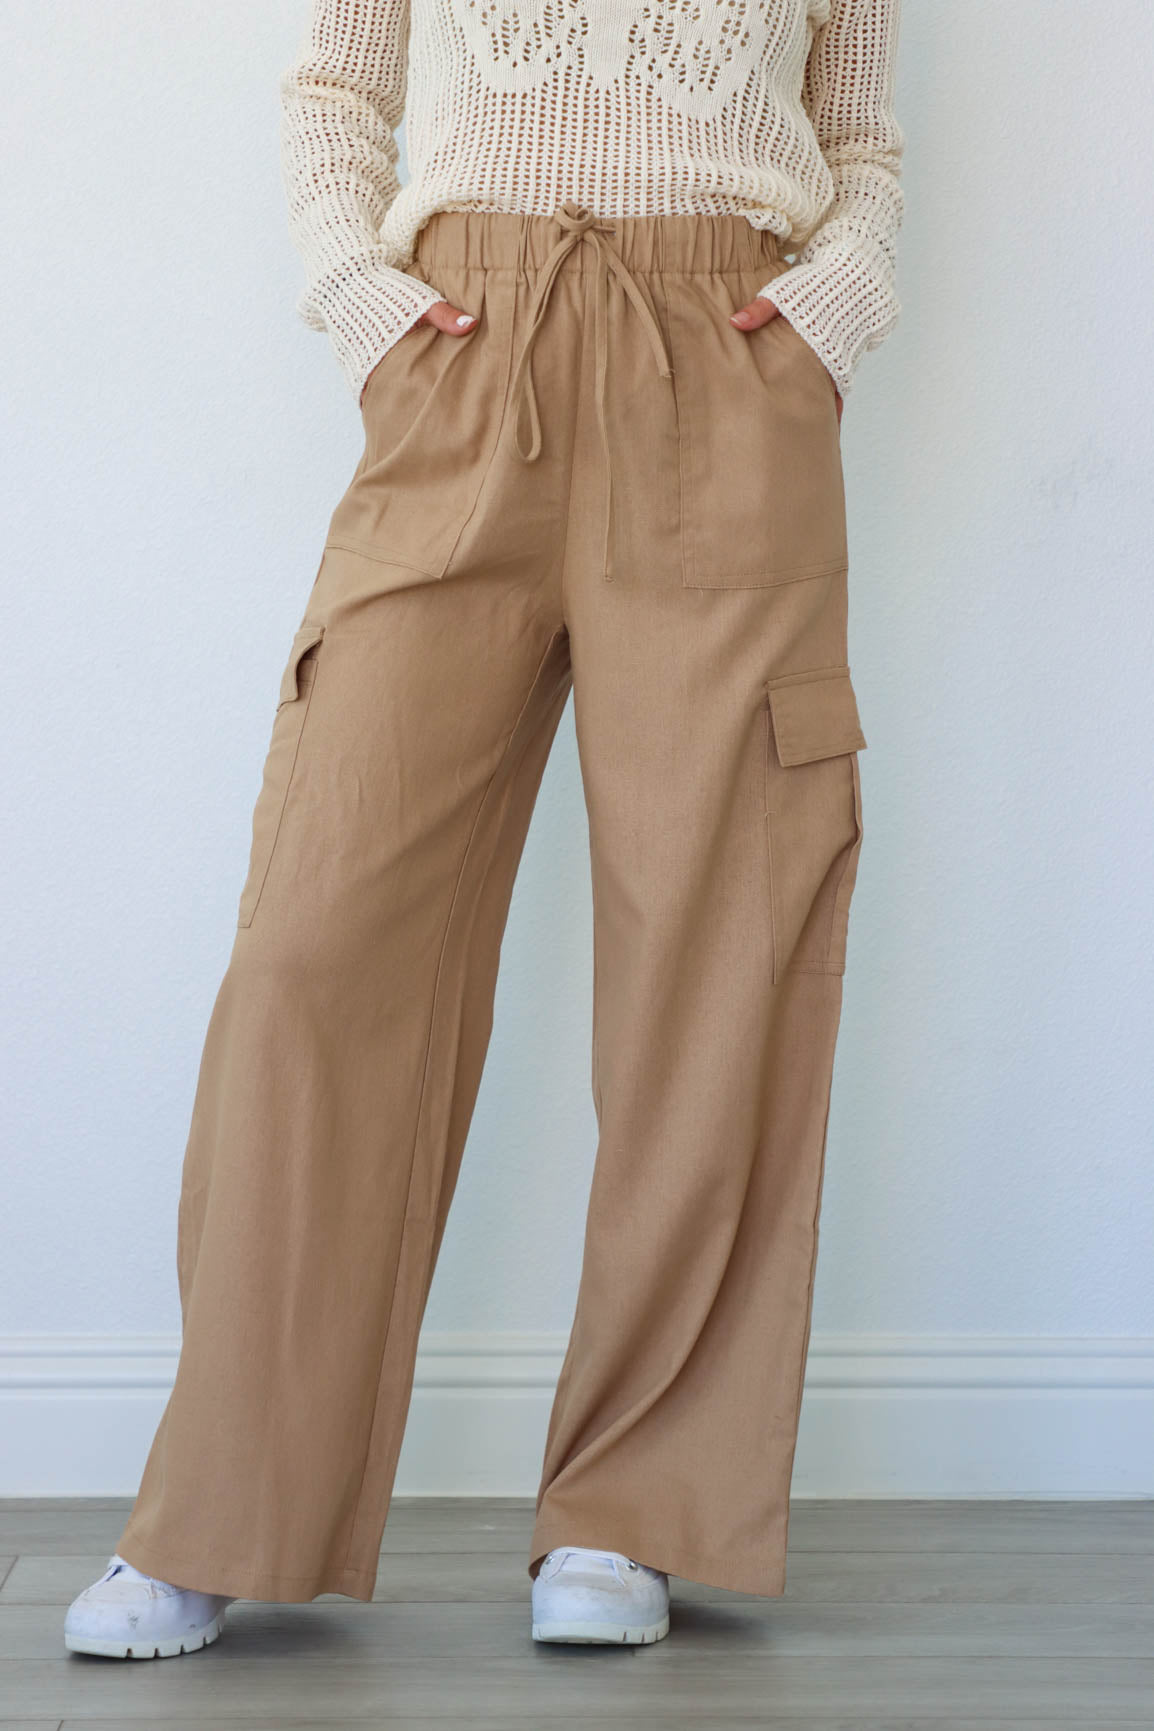 girl wearing brown cargo linen pants